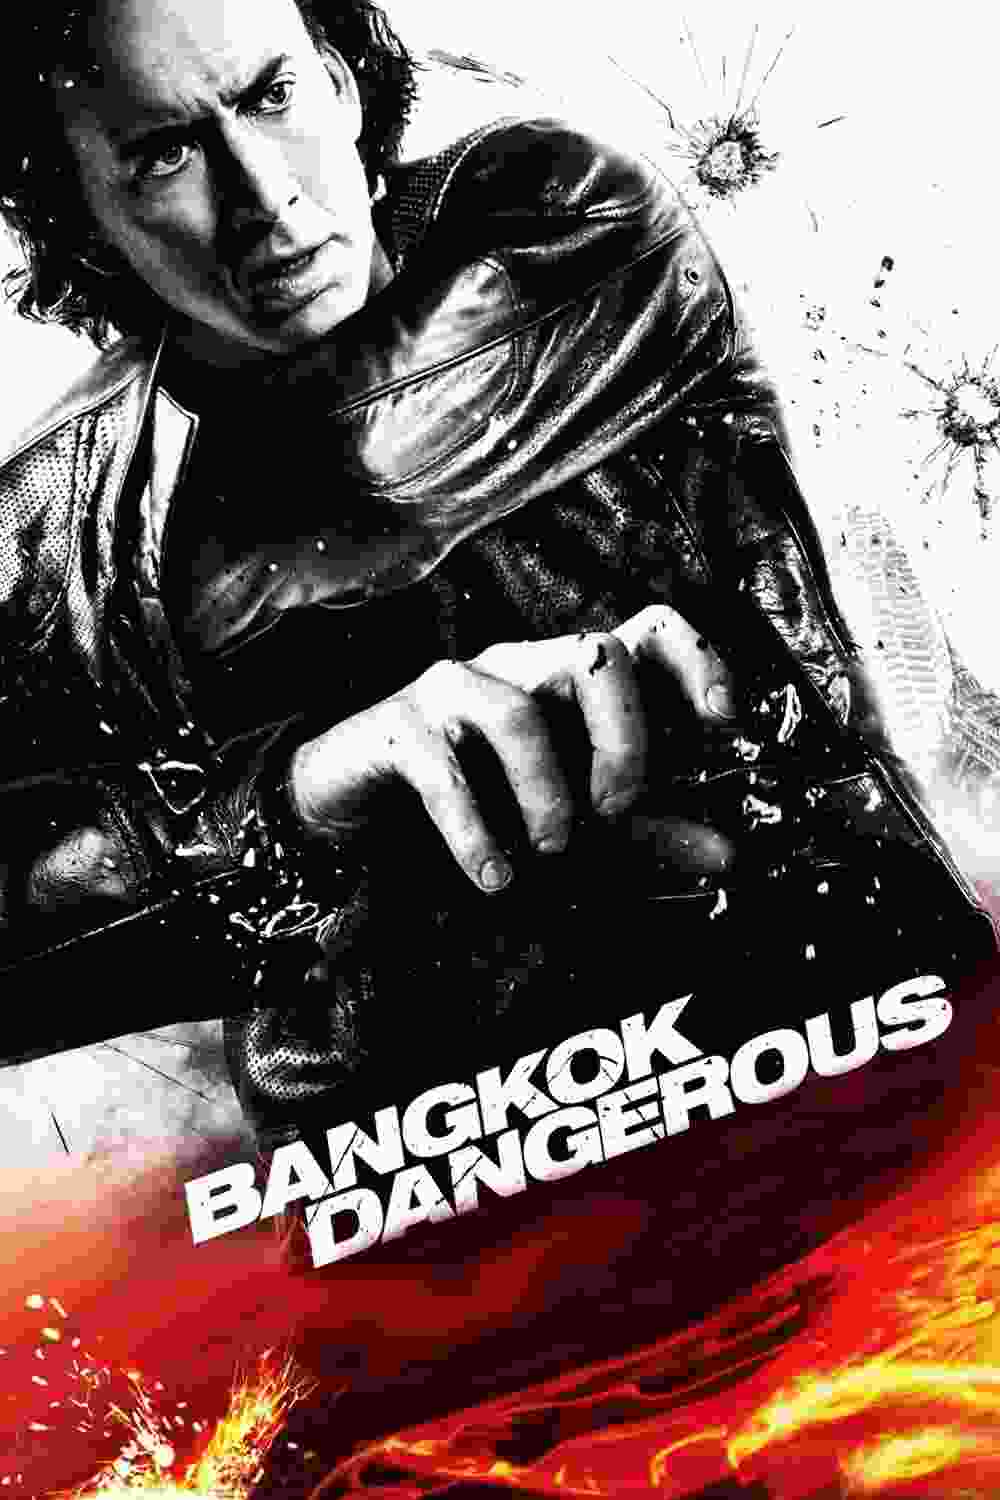 Bangkok Dangerous (2008) Nicolas Cage